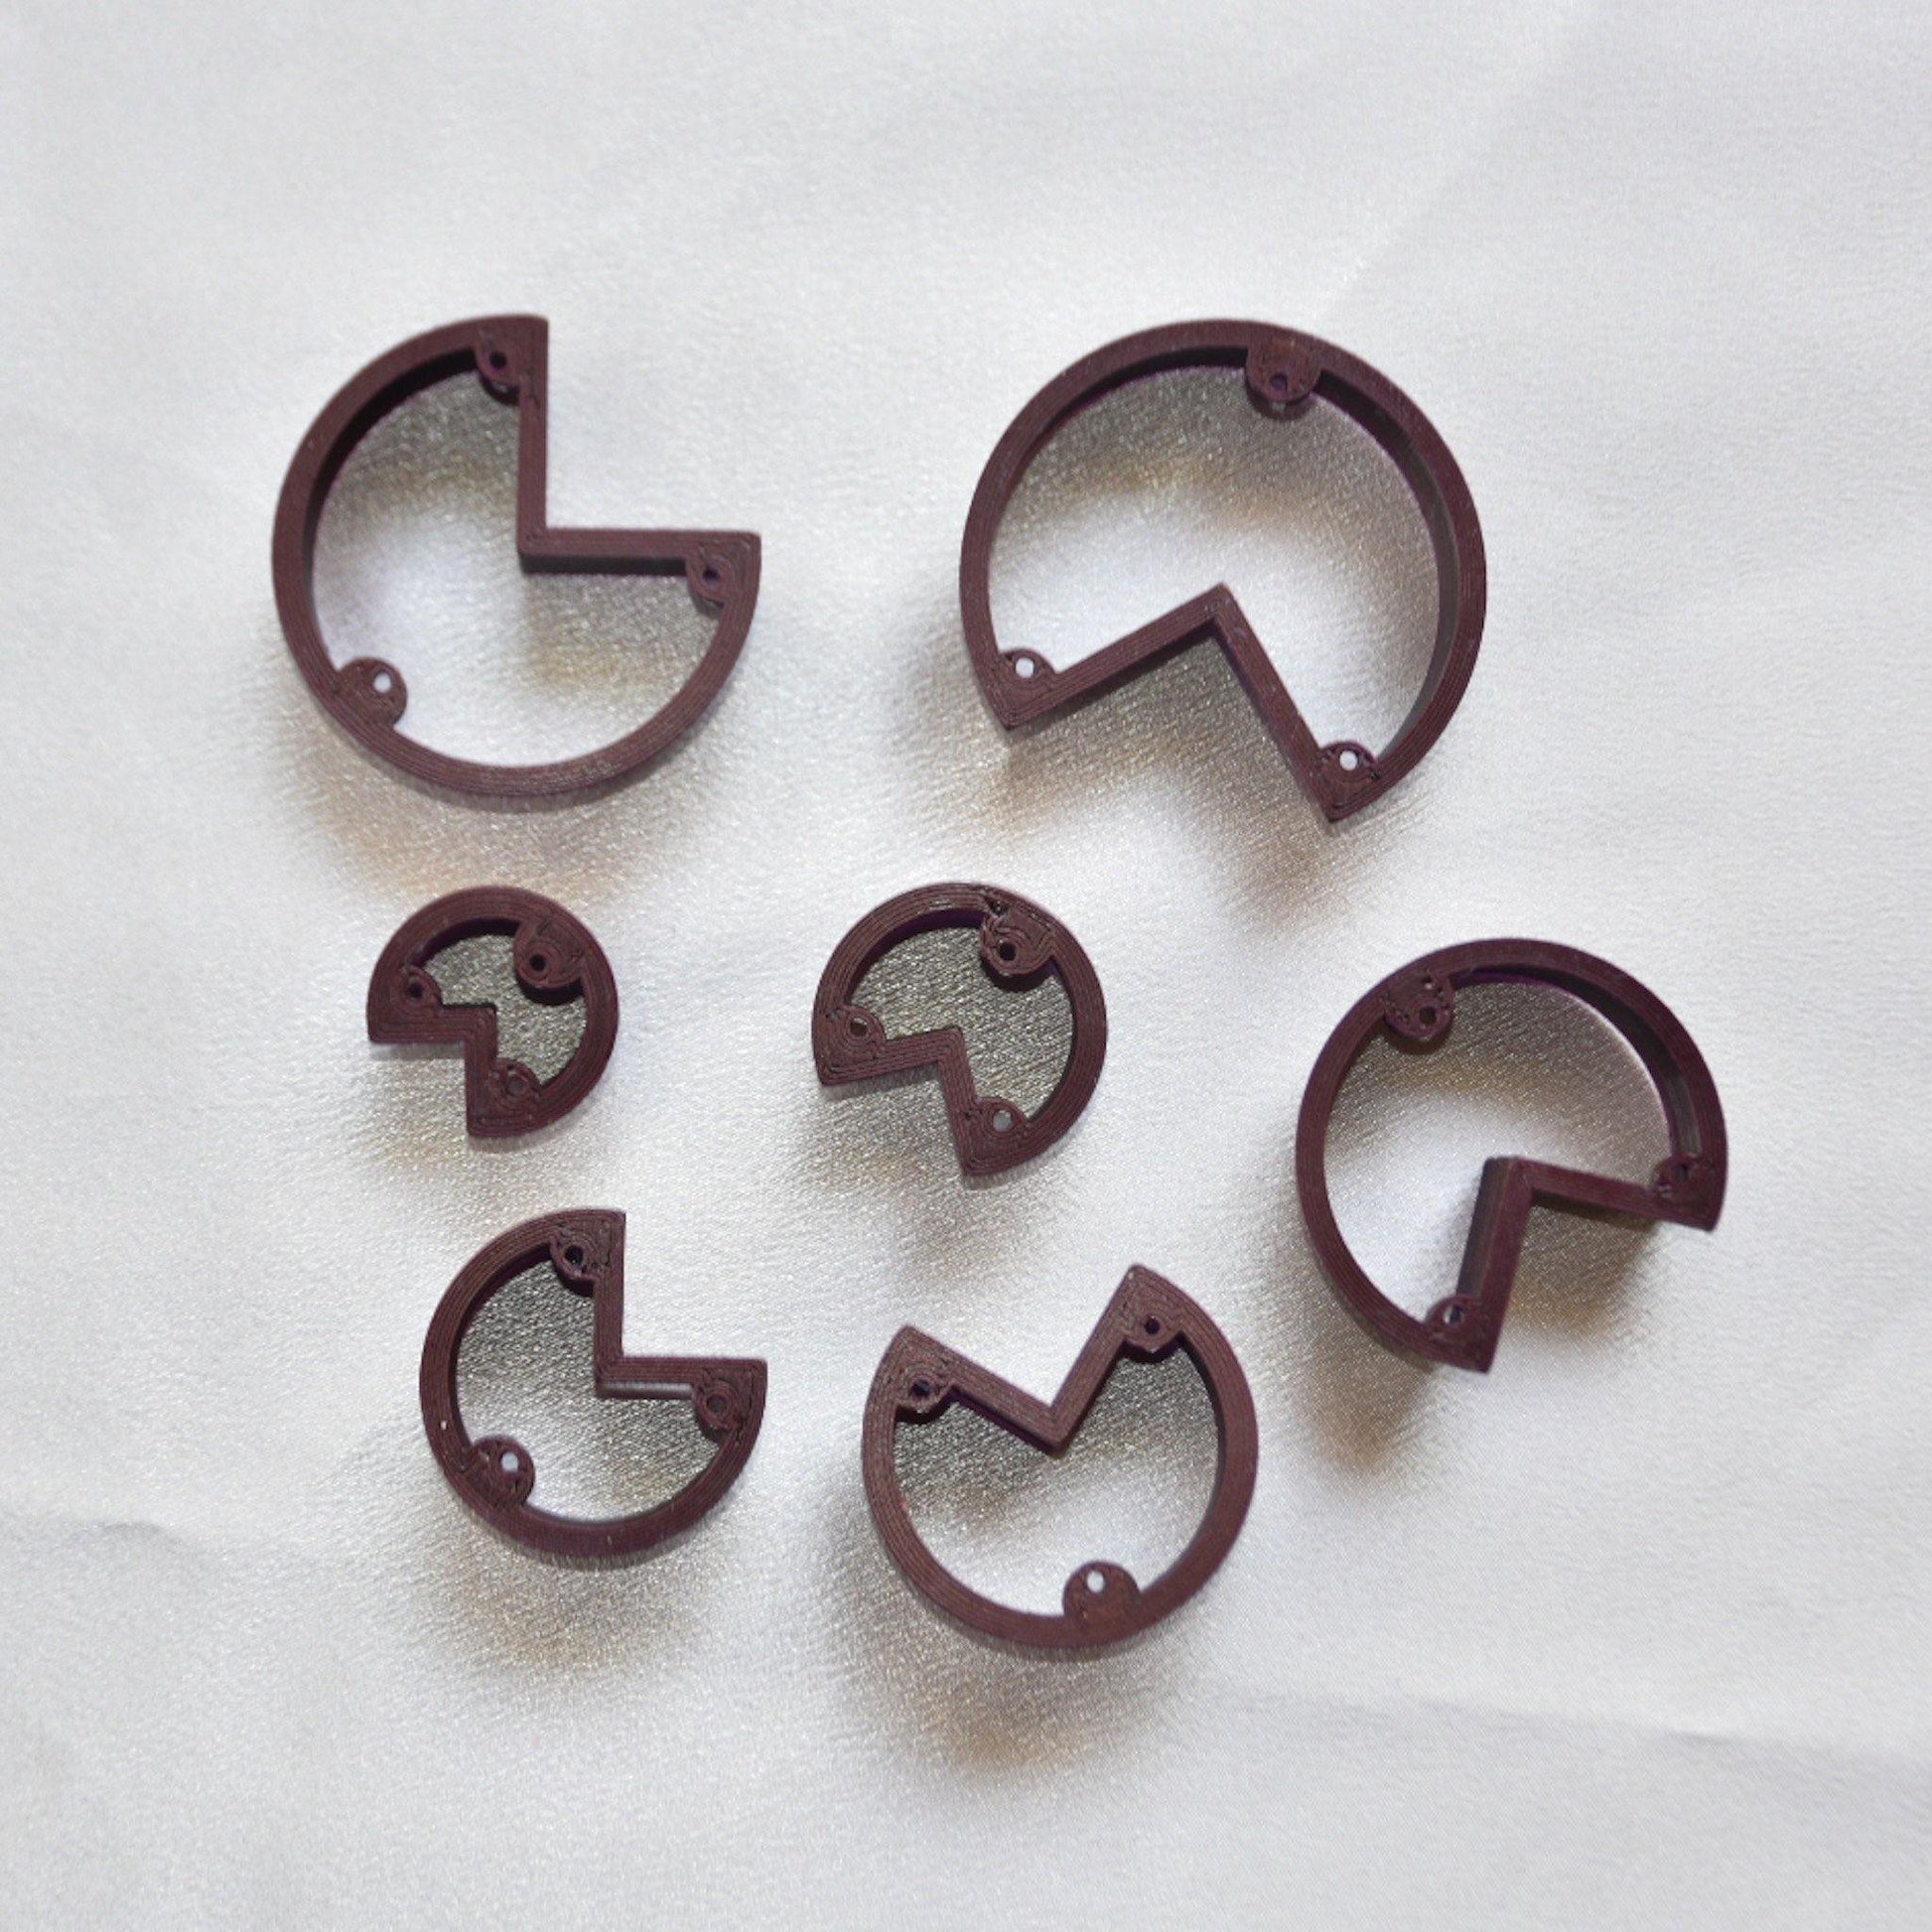 Pacman Cutters - handmade earrings - handcrafted earrings - Saint Petersburg, Florida